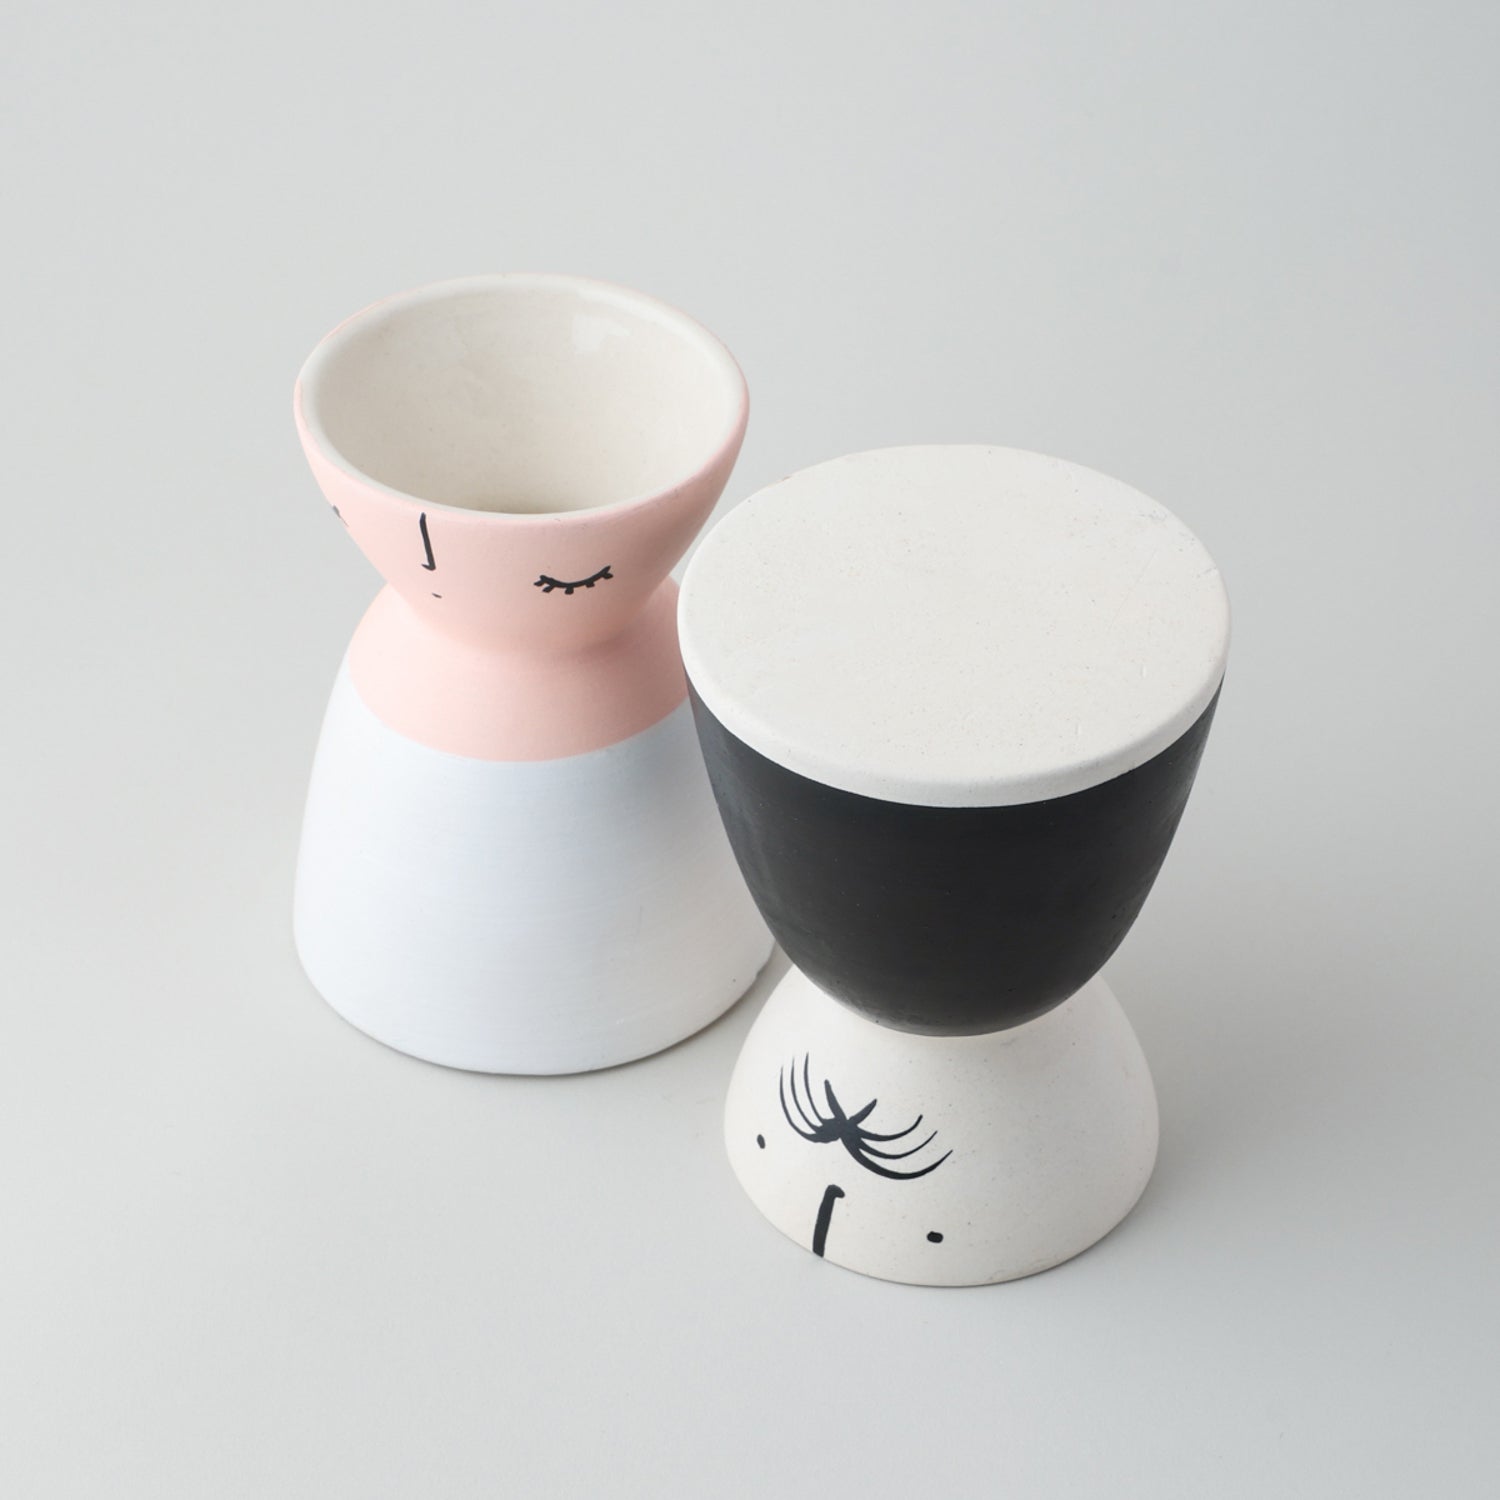 Ceramic Flower Vase (Set of 2) Pink & Black 5x4